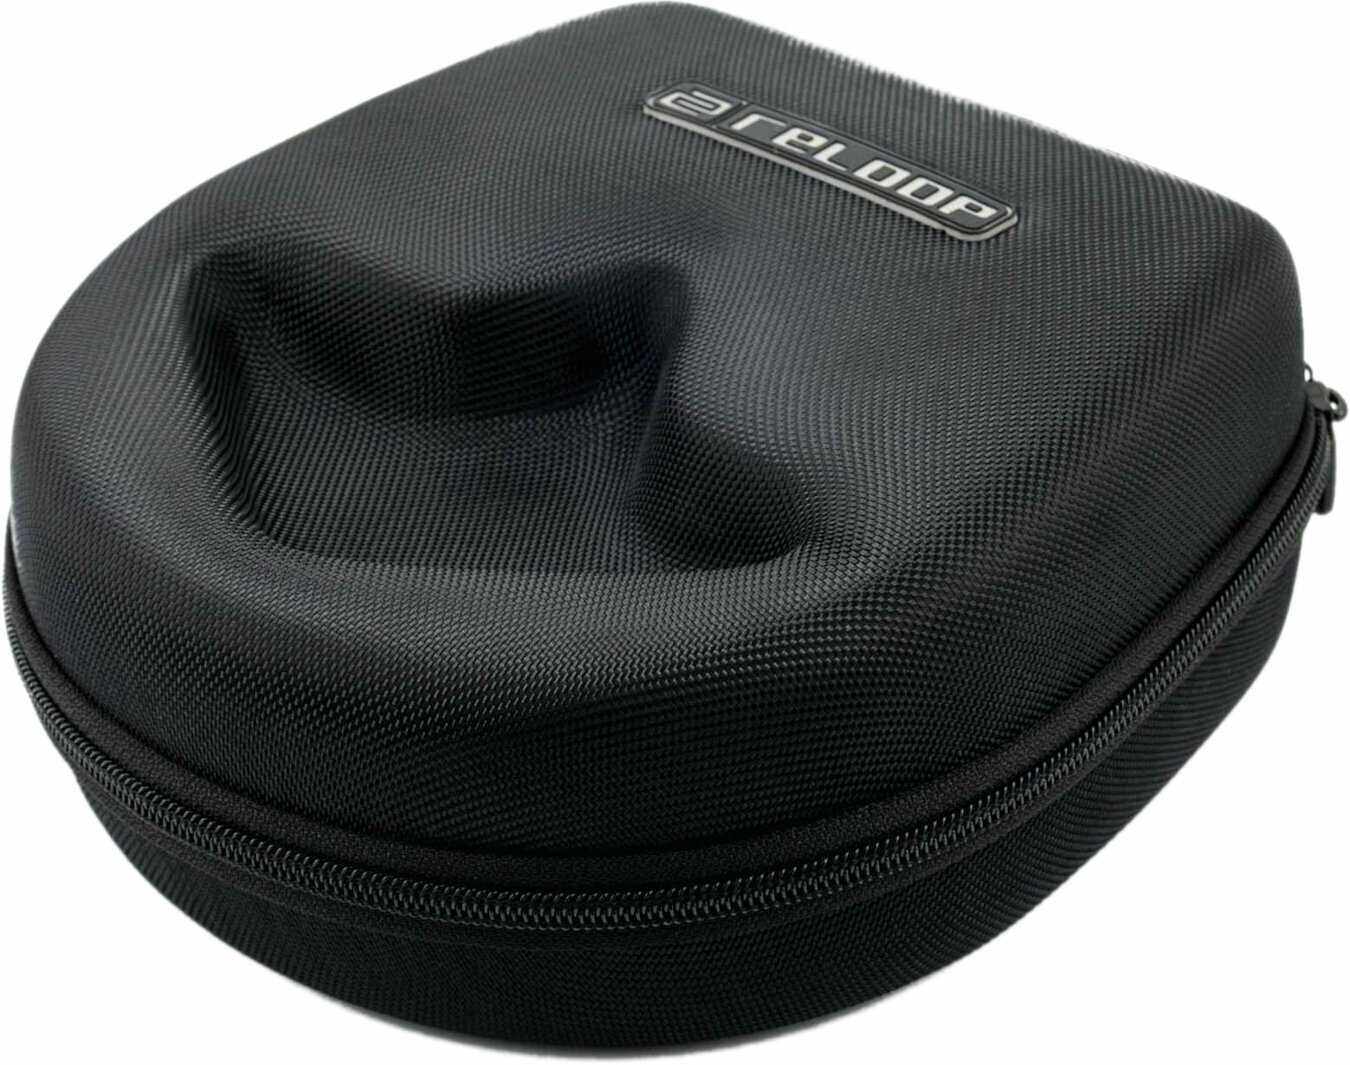 Taschen und Abdeckungen - Reloop Premium Headphone Bag DJ-Kopfhörer-Case